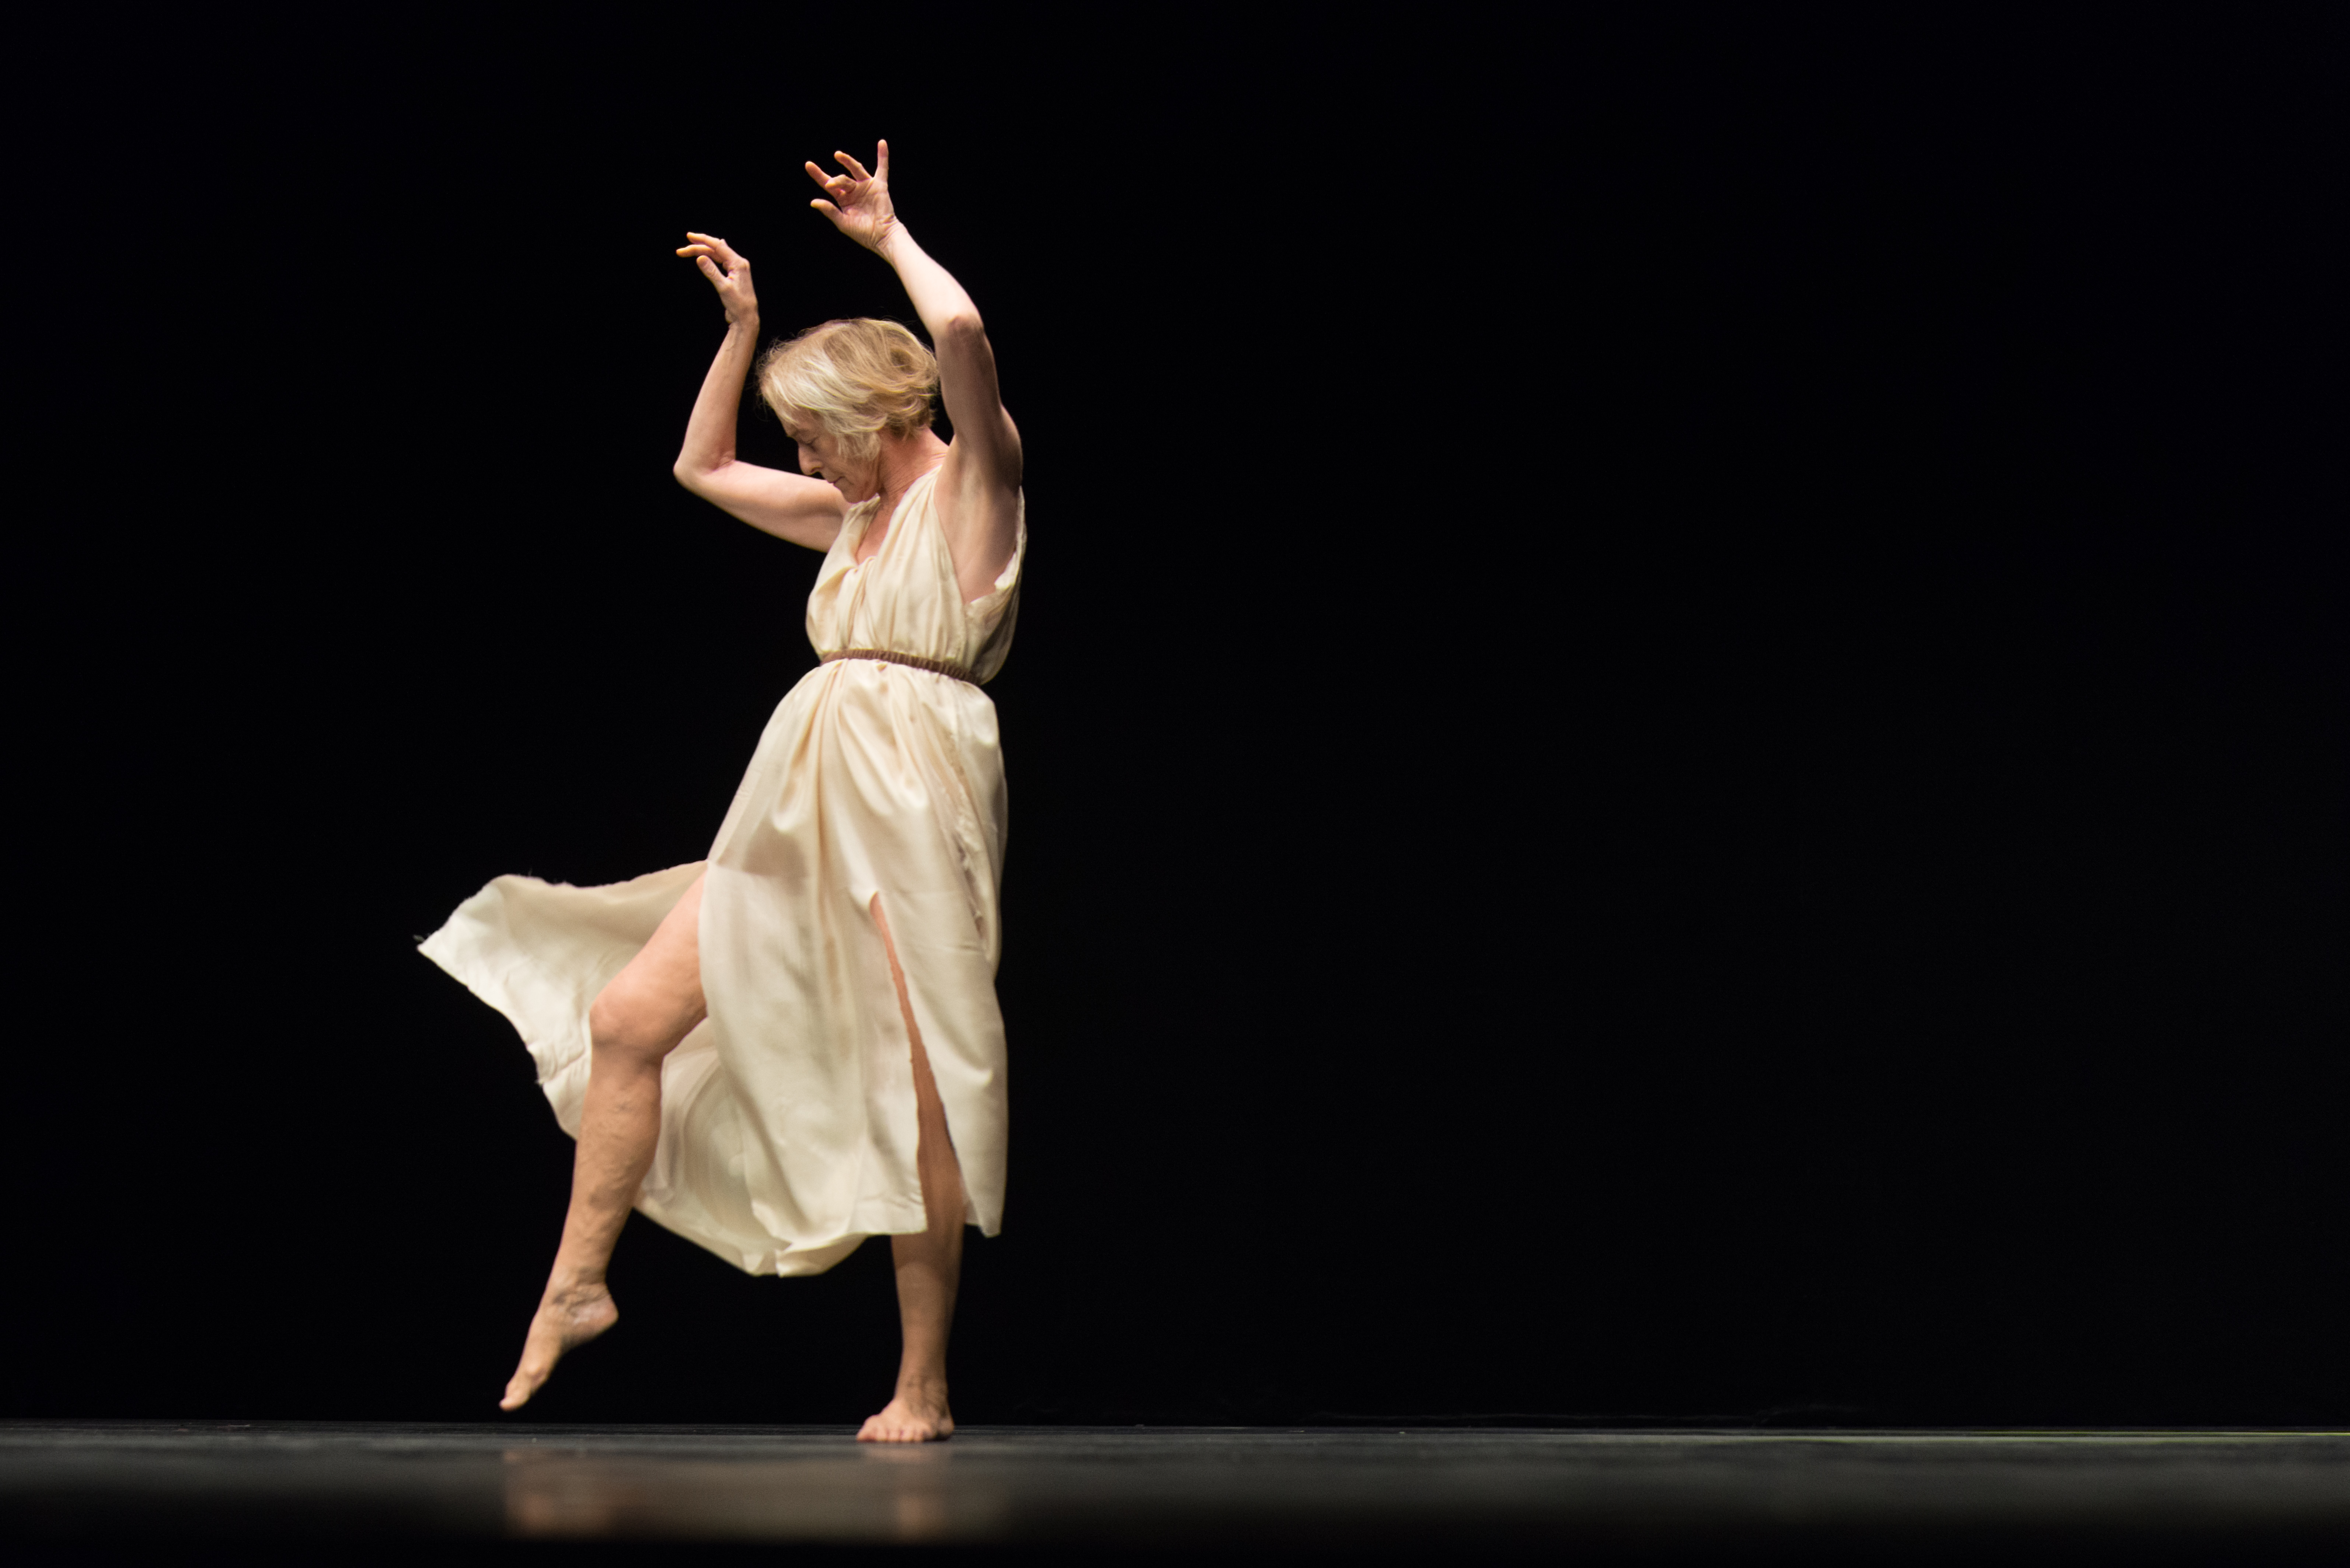 Die 70-jährige Tänzerin Elizabeth Schwartz als Isadora Duncan in graziler Pose in einem weißen klassizistischen Kleid